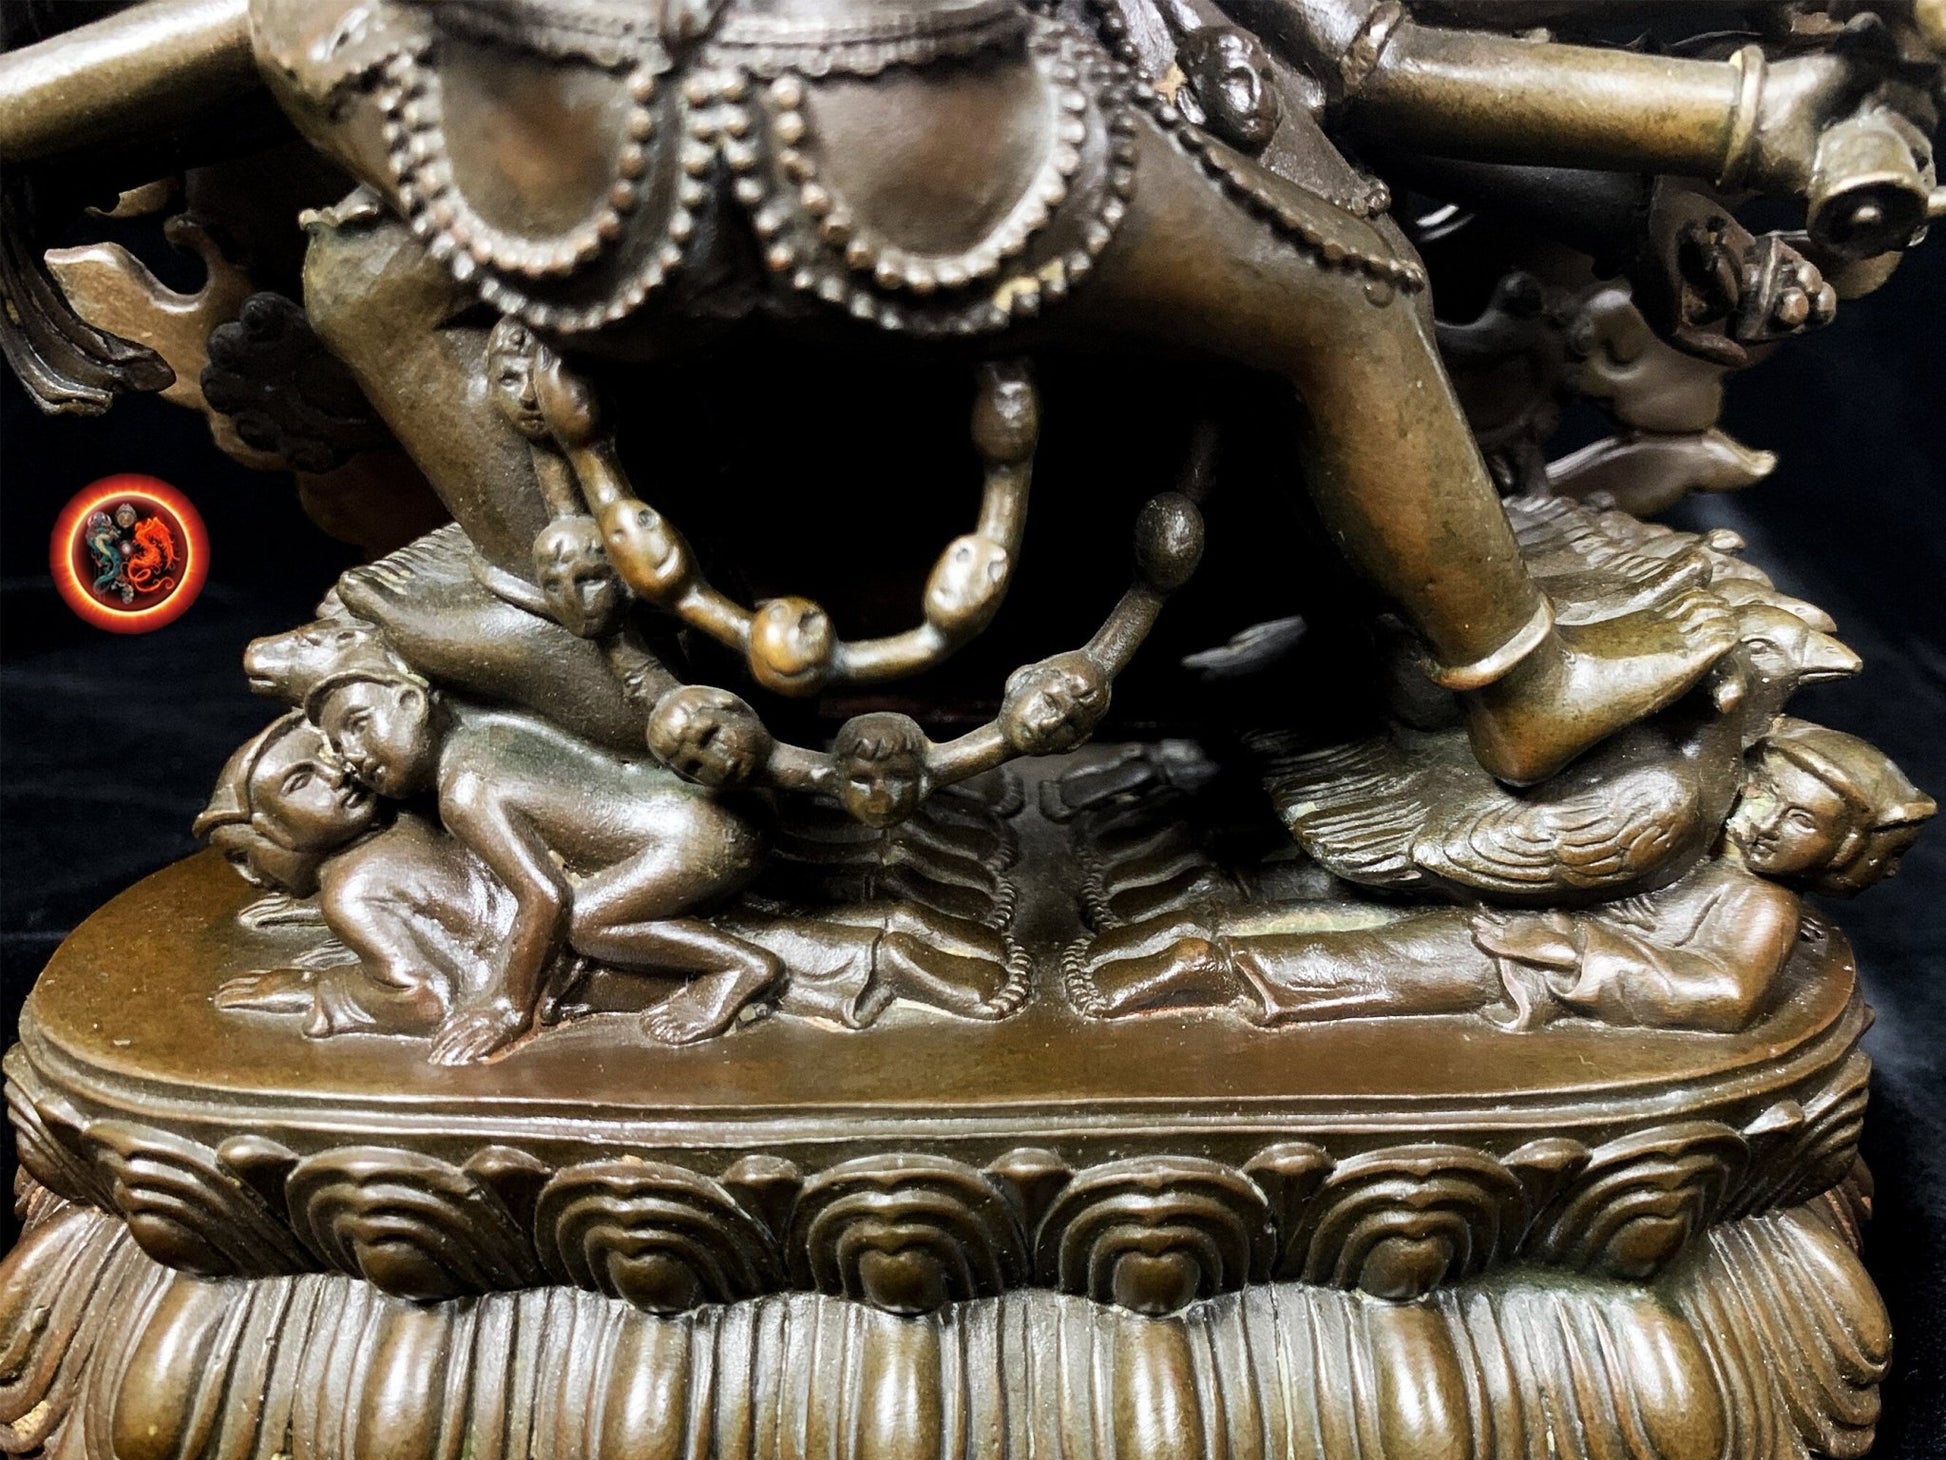 statuette bouddhiste,Statue Yidam Yamantaka, bouddhisme vajrayana ésotérique, tantrique  en yab yum avec sa parèdre Vétali. - obsidian dragon